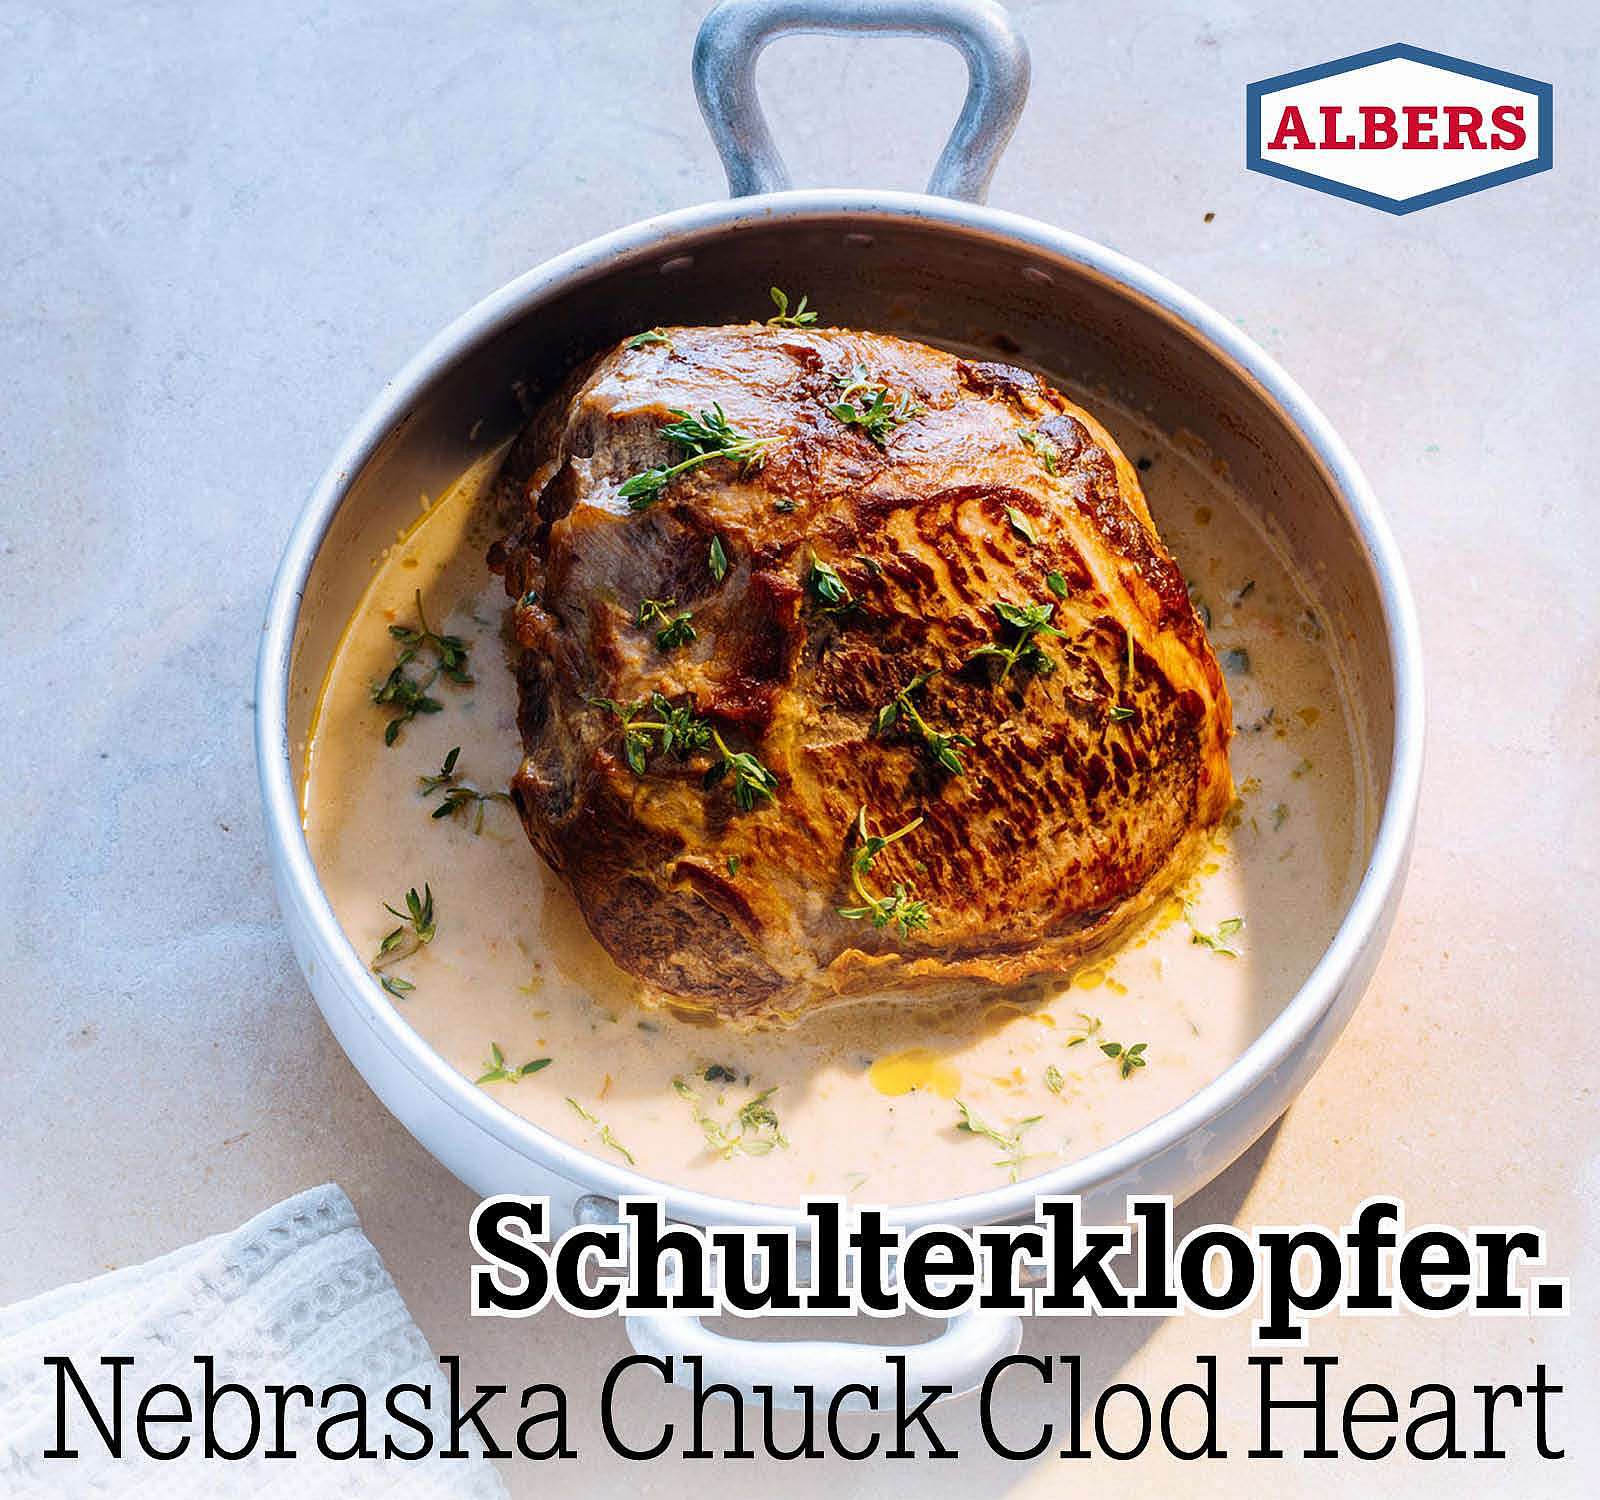 Schulterklopfer. Greater Omaha Chuck Clod Heart